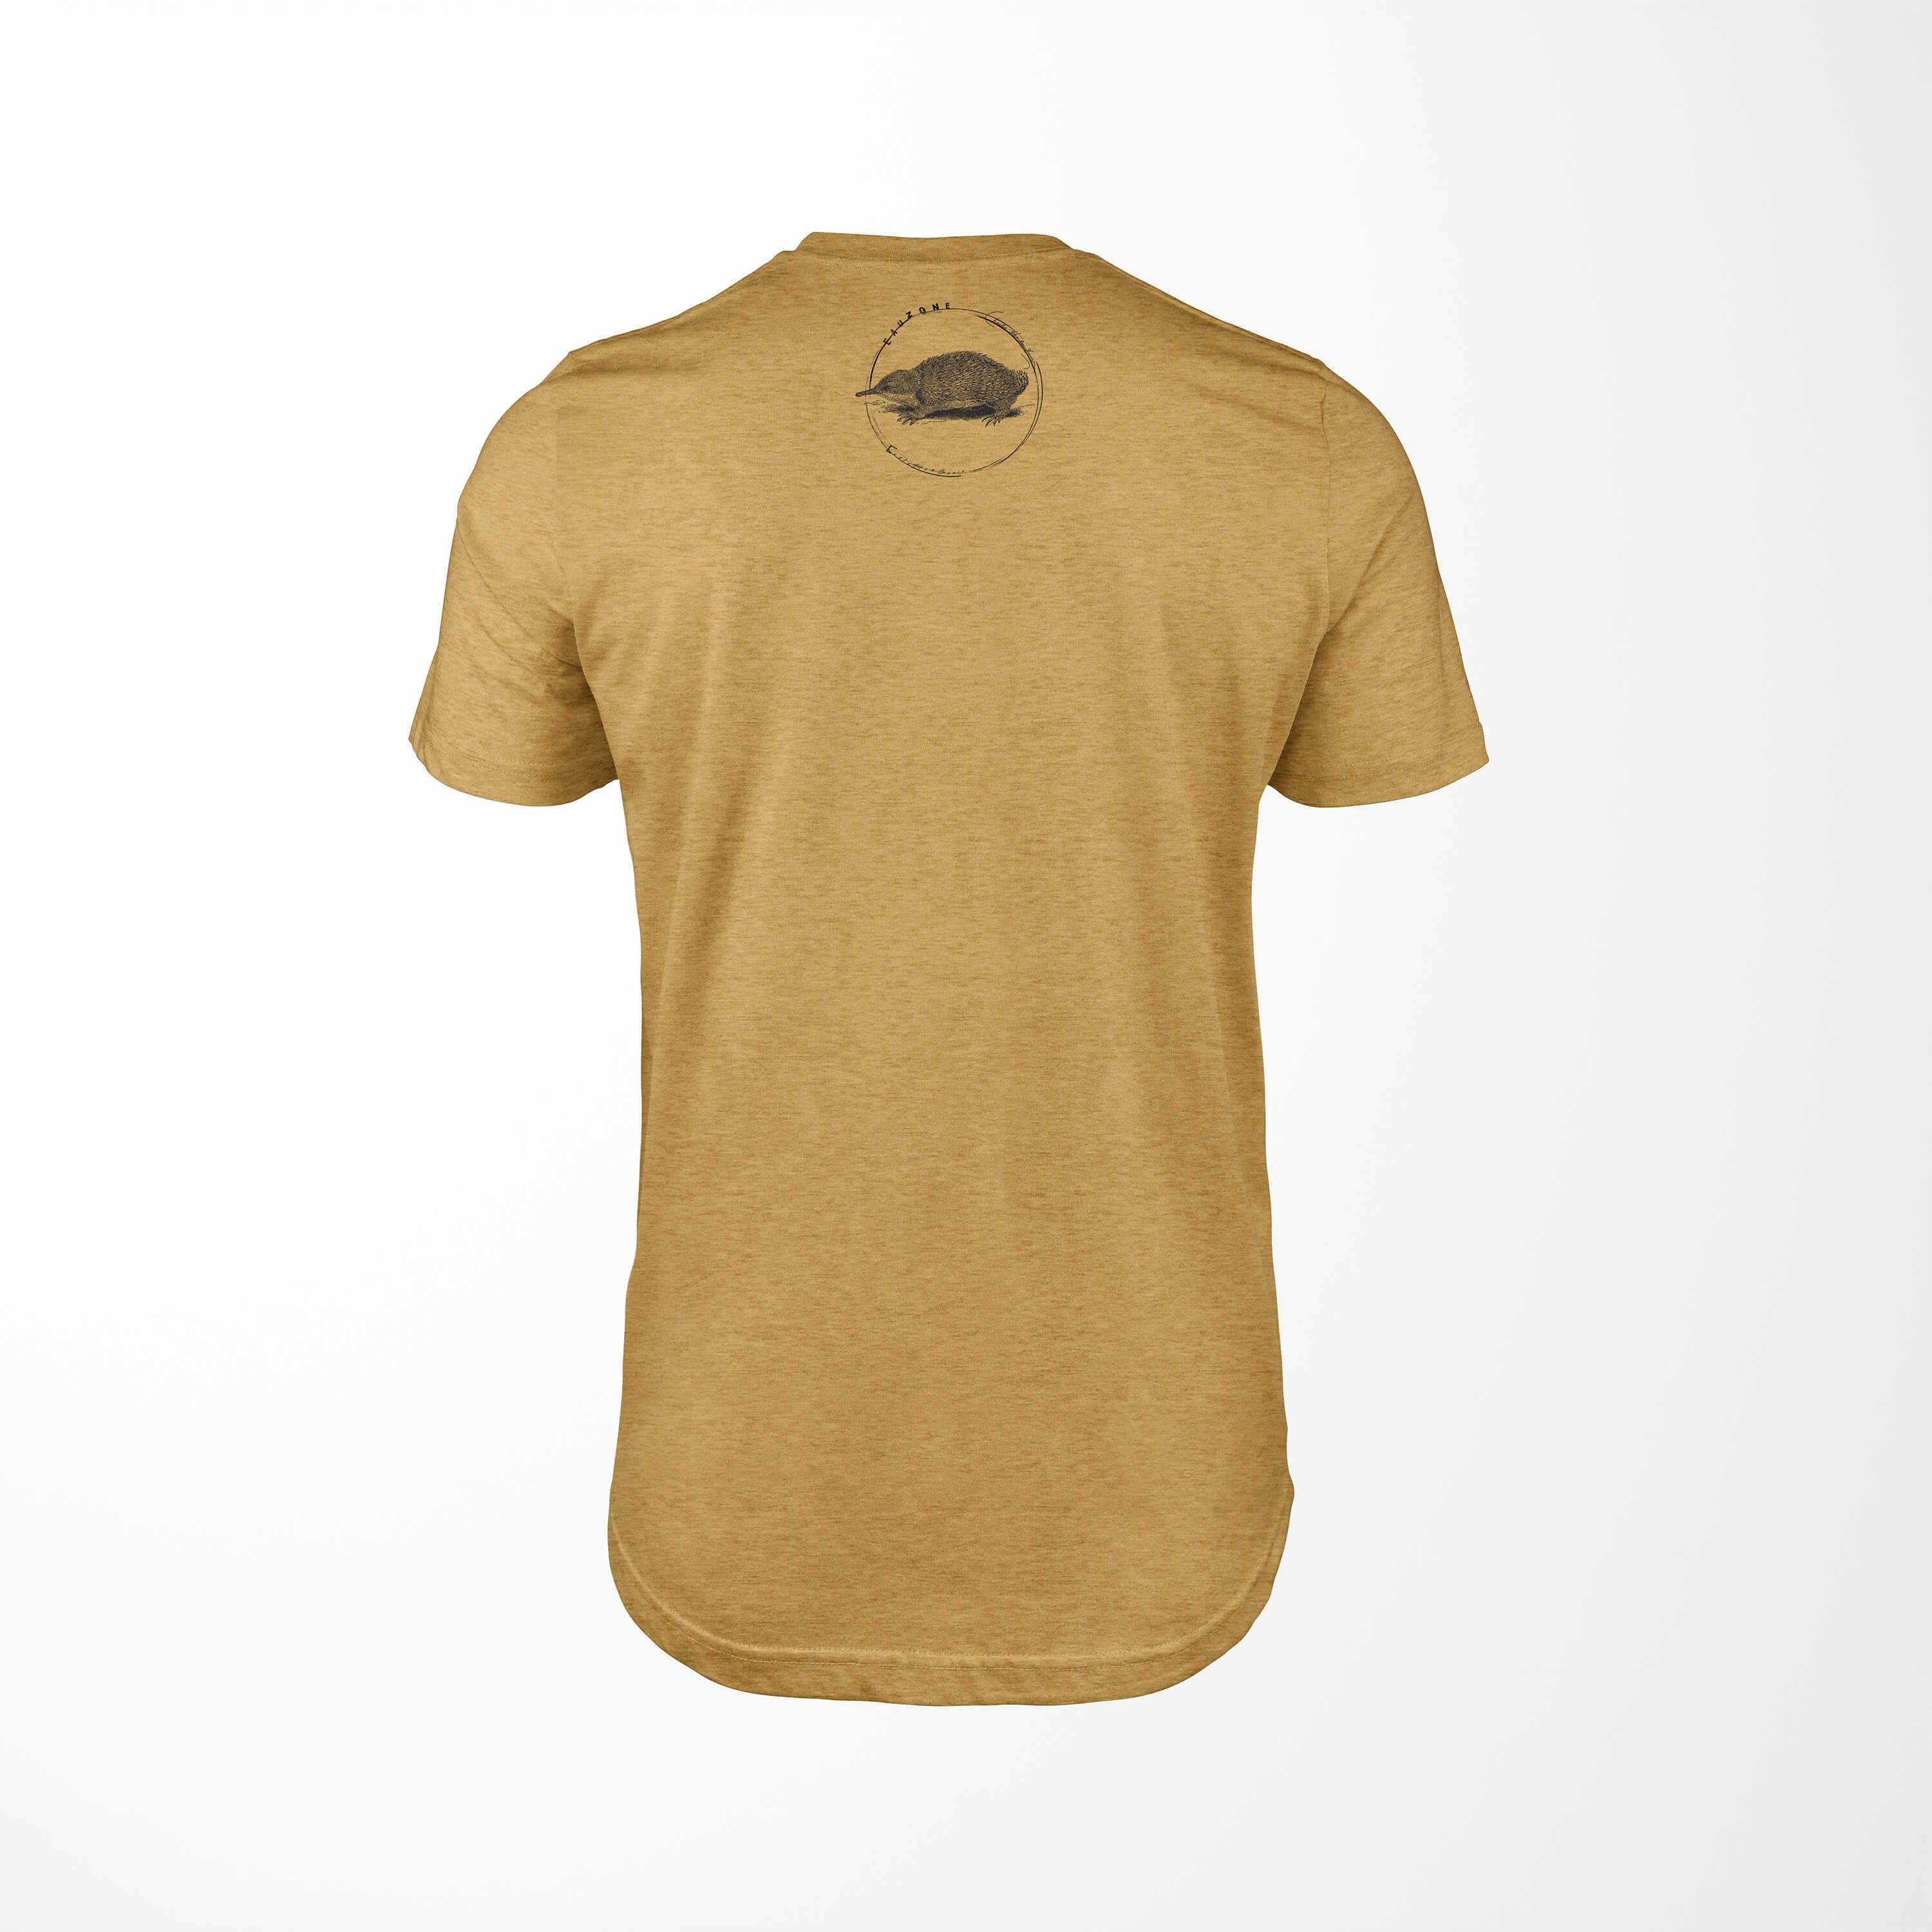 Gold Ameisenigel Art T-Shirt Sinus T-Shirt Antique Evolution Herren